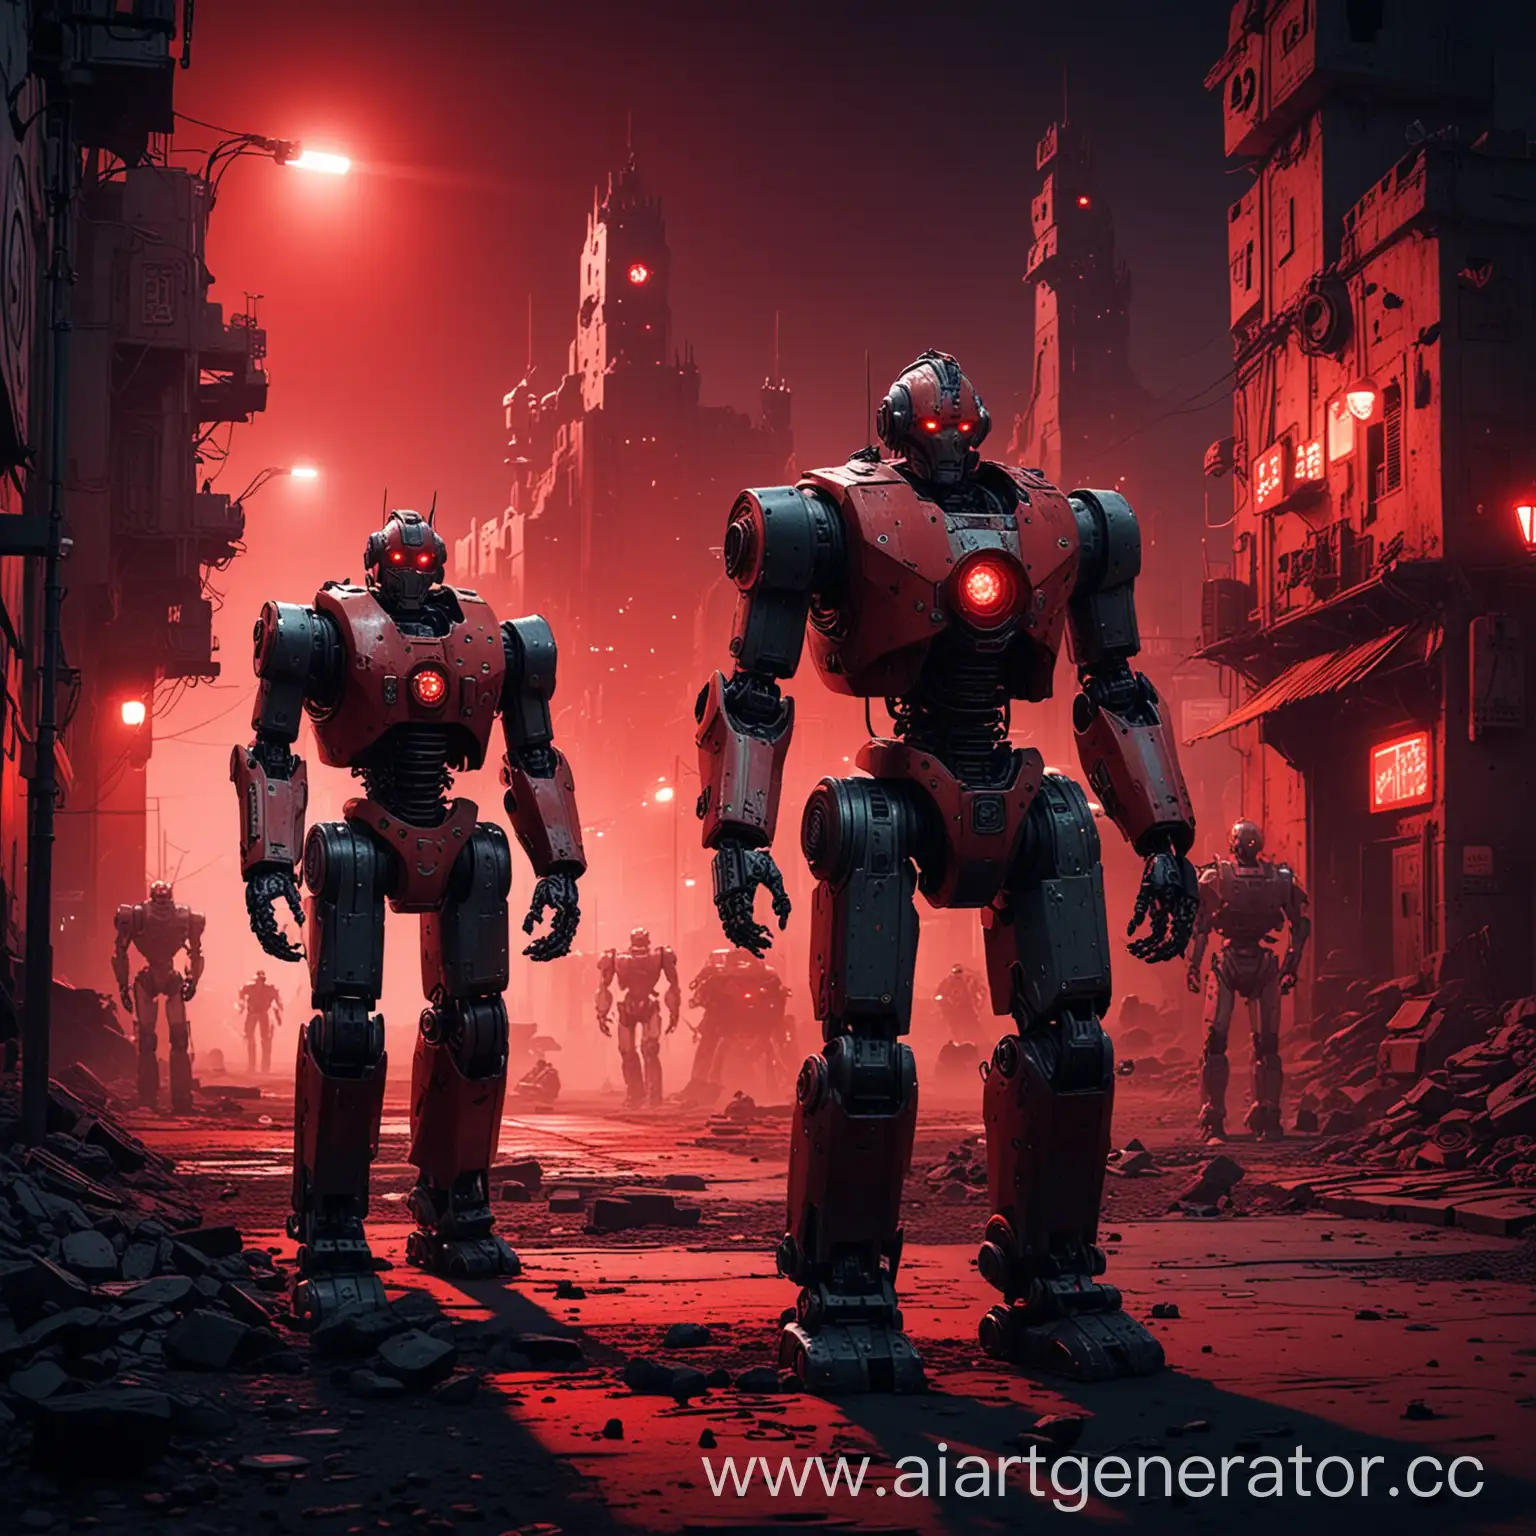 robots, night, citadel at background, red light